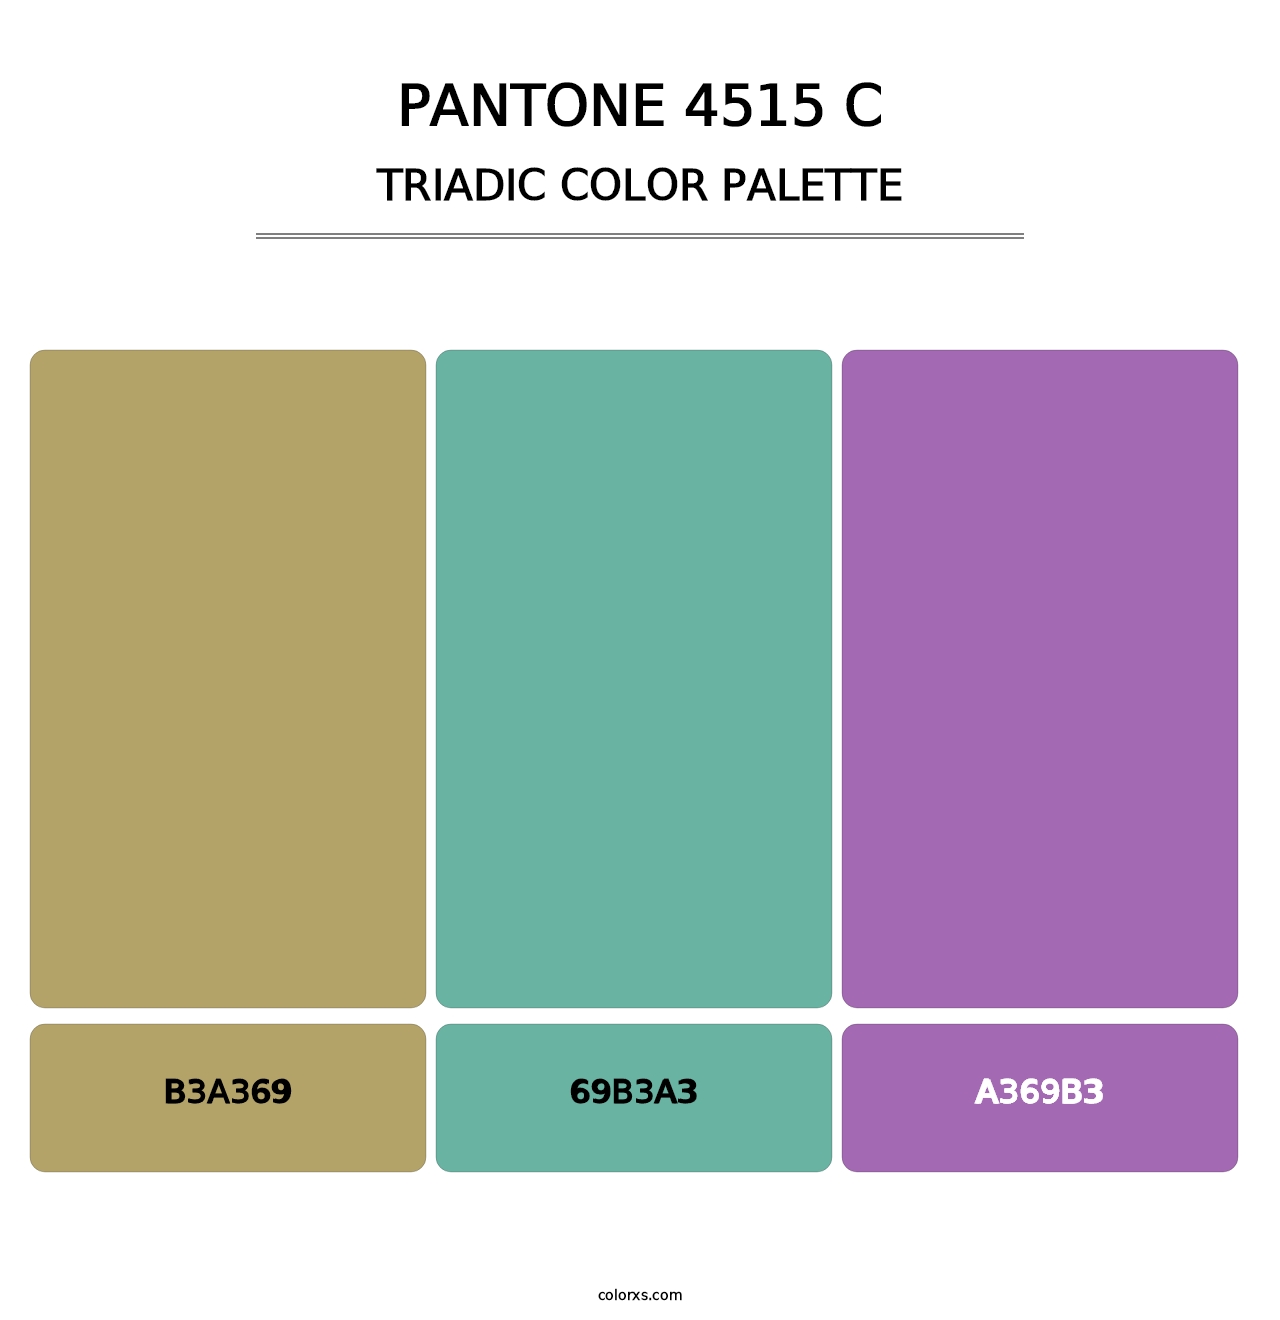 PANTONE 4515 C - Triadic Color Palette